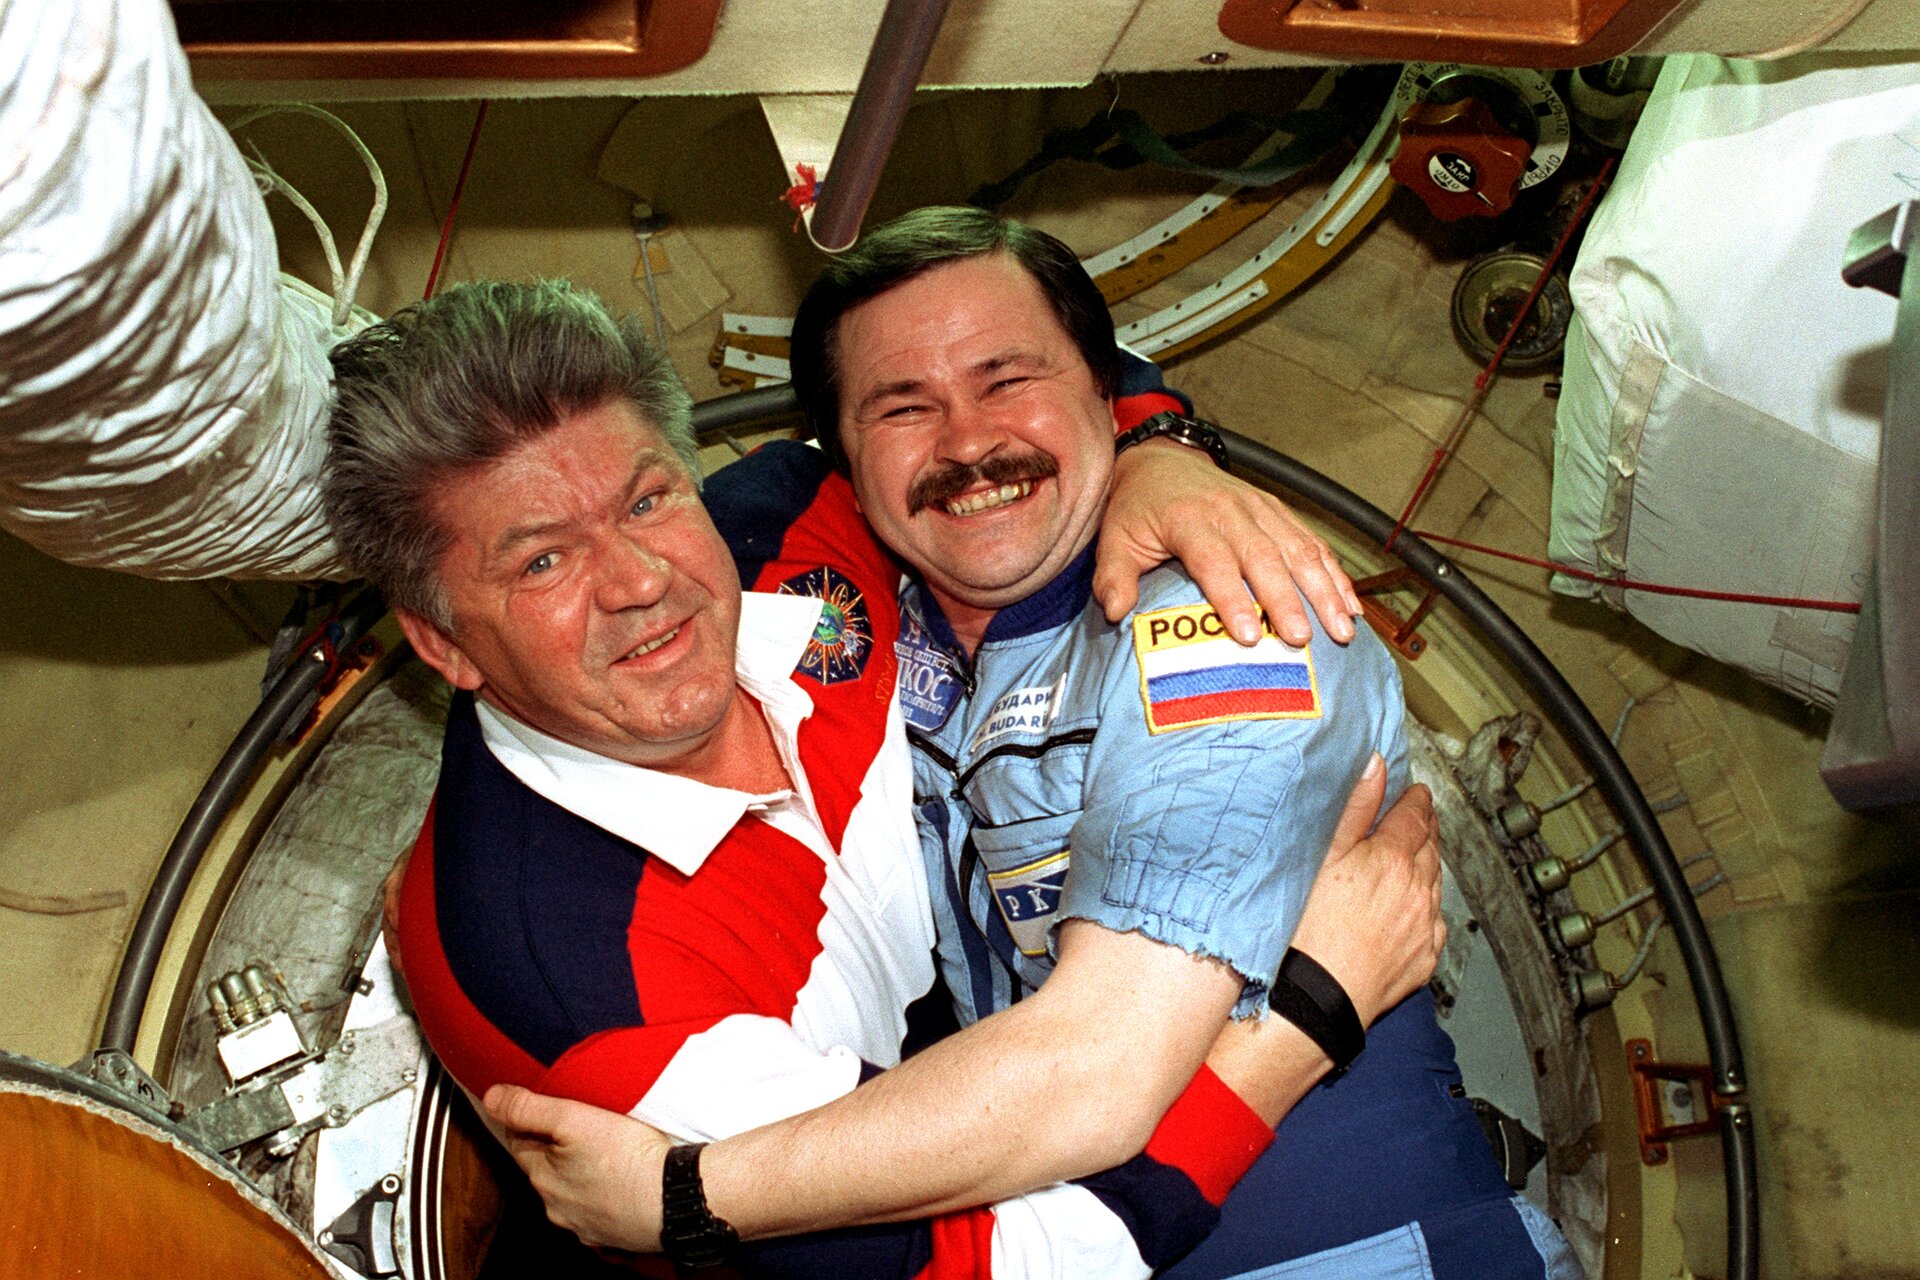 Zdjęcie przedstawia dwóch kosmonautów na stacji Mir. Mężczyźni w wieku ok. 50 lat. Obejmują się i pozują do zdjęcia. Mężczyzna po lewej ma siwiejące włosy, ogorzałą twarz oraz widoczne zmarszczki. Oczy jasne. Nos duży. Ubrany w koszulkę polo z długim rękawem w granatowo-czerwono-białe pasy z białym kołnierzykiem. Mężczyzna po prawej ma krótkie, ciemne włosy, starannie zaczesane z przedziałkiem po prawej stronie (jego lewej). Mężczyzna szeroko się uśmiecha pokazując zęby. Oczy zmrużone. Mężczyzna ma ciemne wąsy. Ubrany jest w niebieski kombinezon z naszytą na lewym ramieniu flagą Rosji. Obaj mężczyźni noszą czarne zegarki.